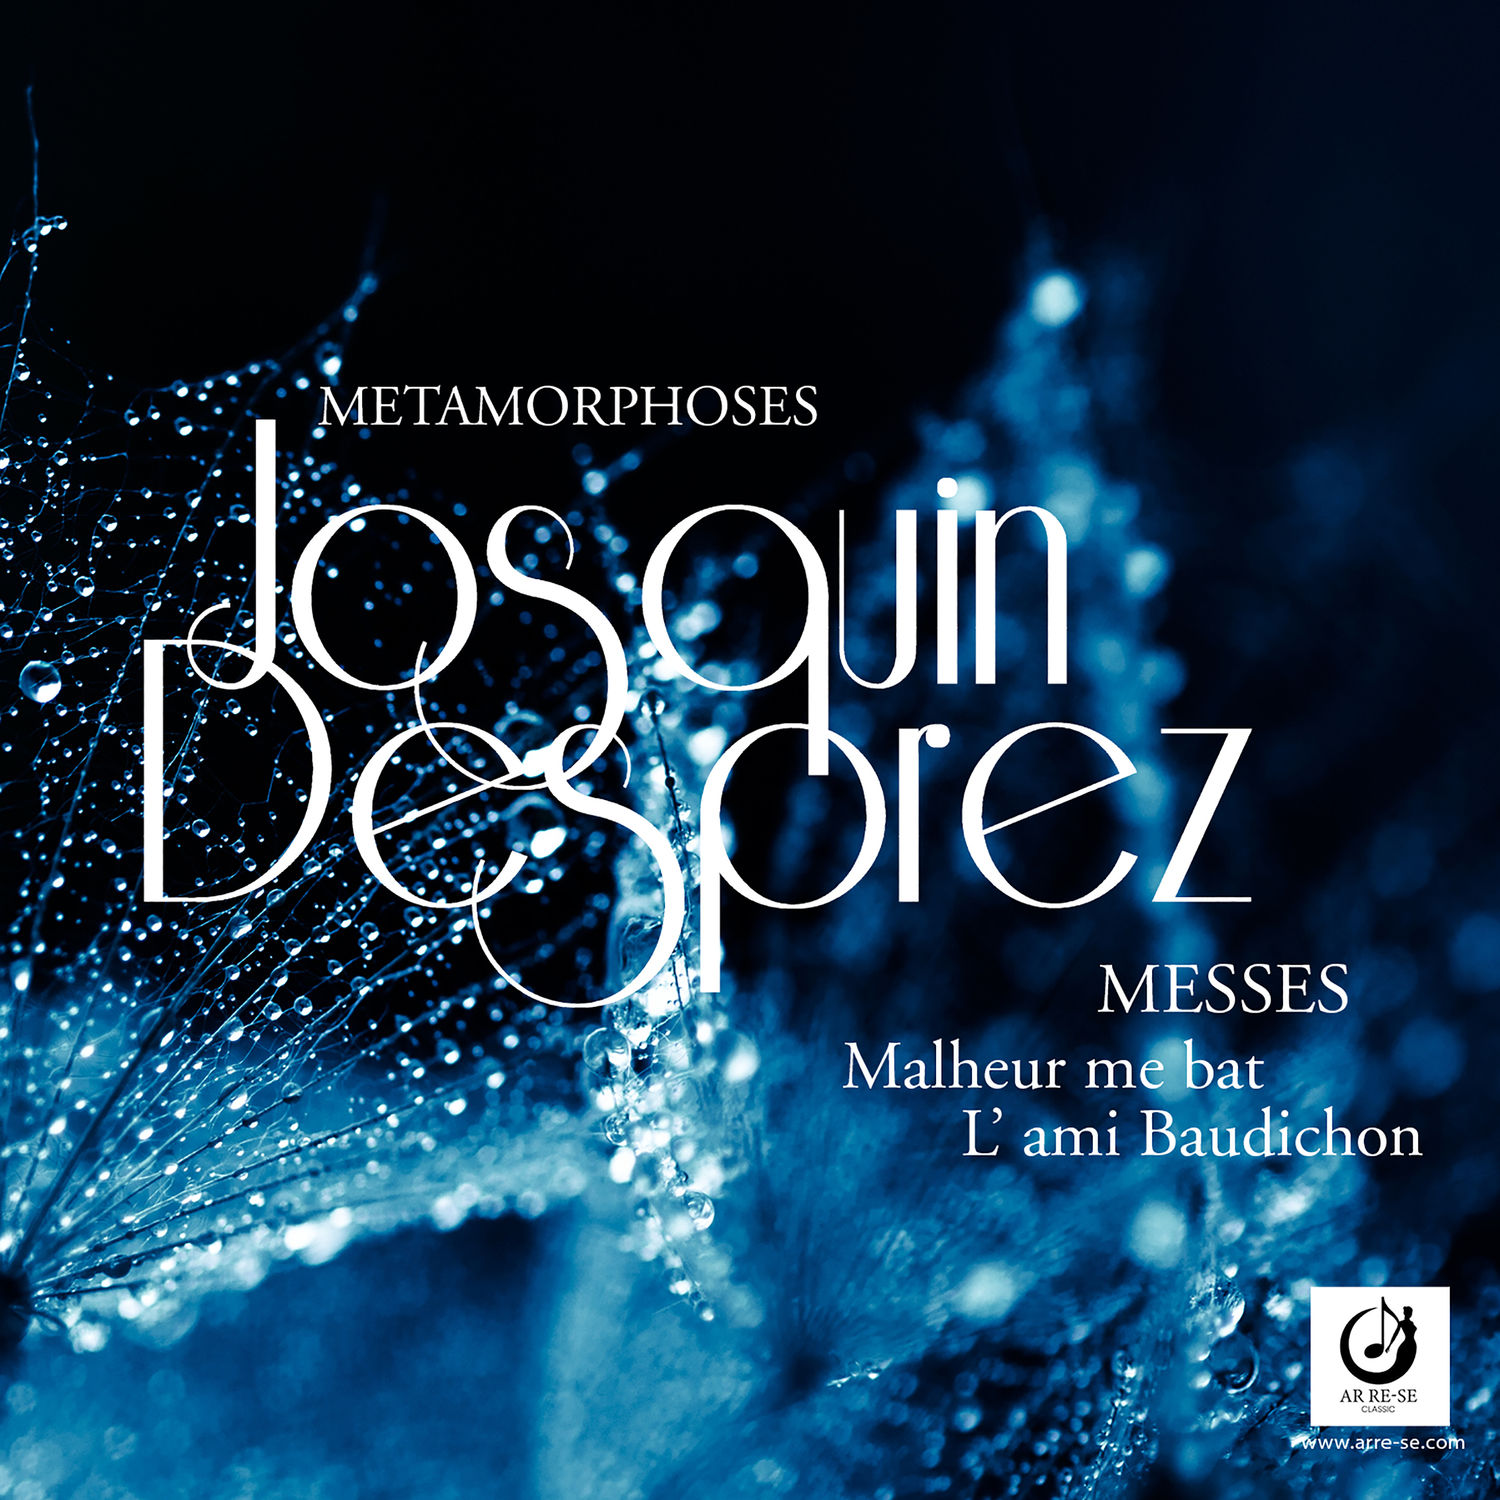 Ensemble Metamorphoses – Messes Malheur me bat et L’ami Baudichon, Vol. 10 – Josquin et St Quentin (2021) [FLAC 24bit/44,1kHz]